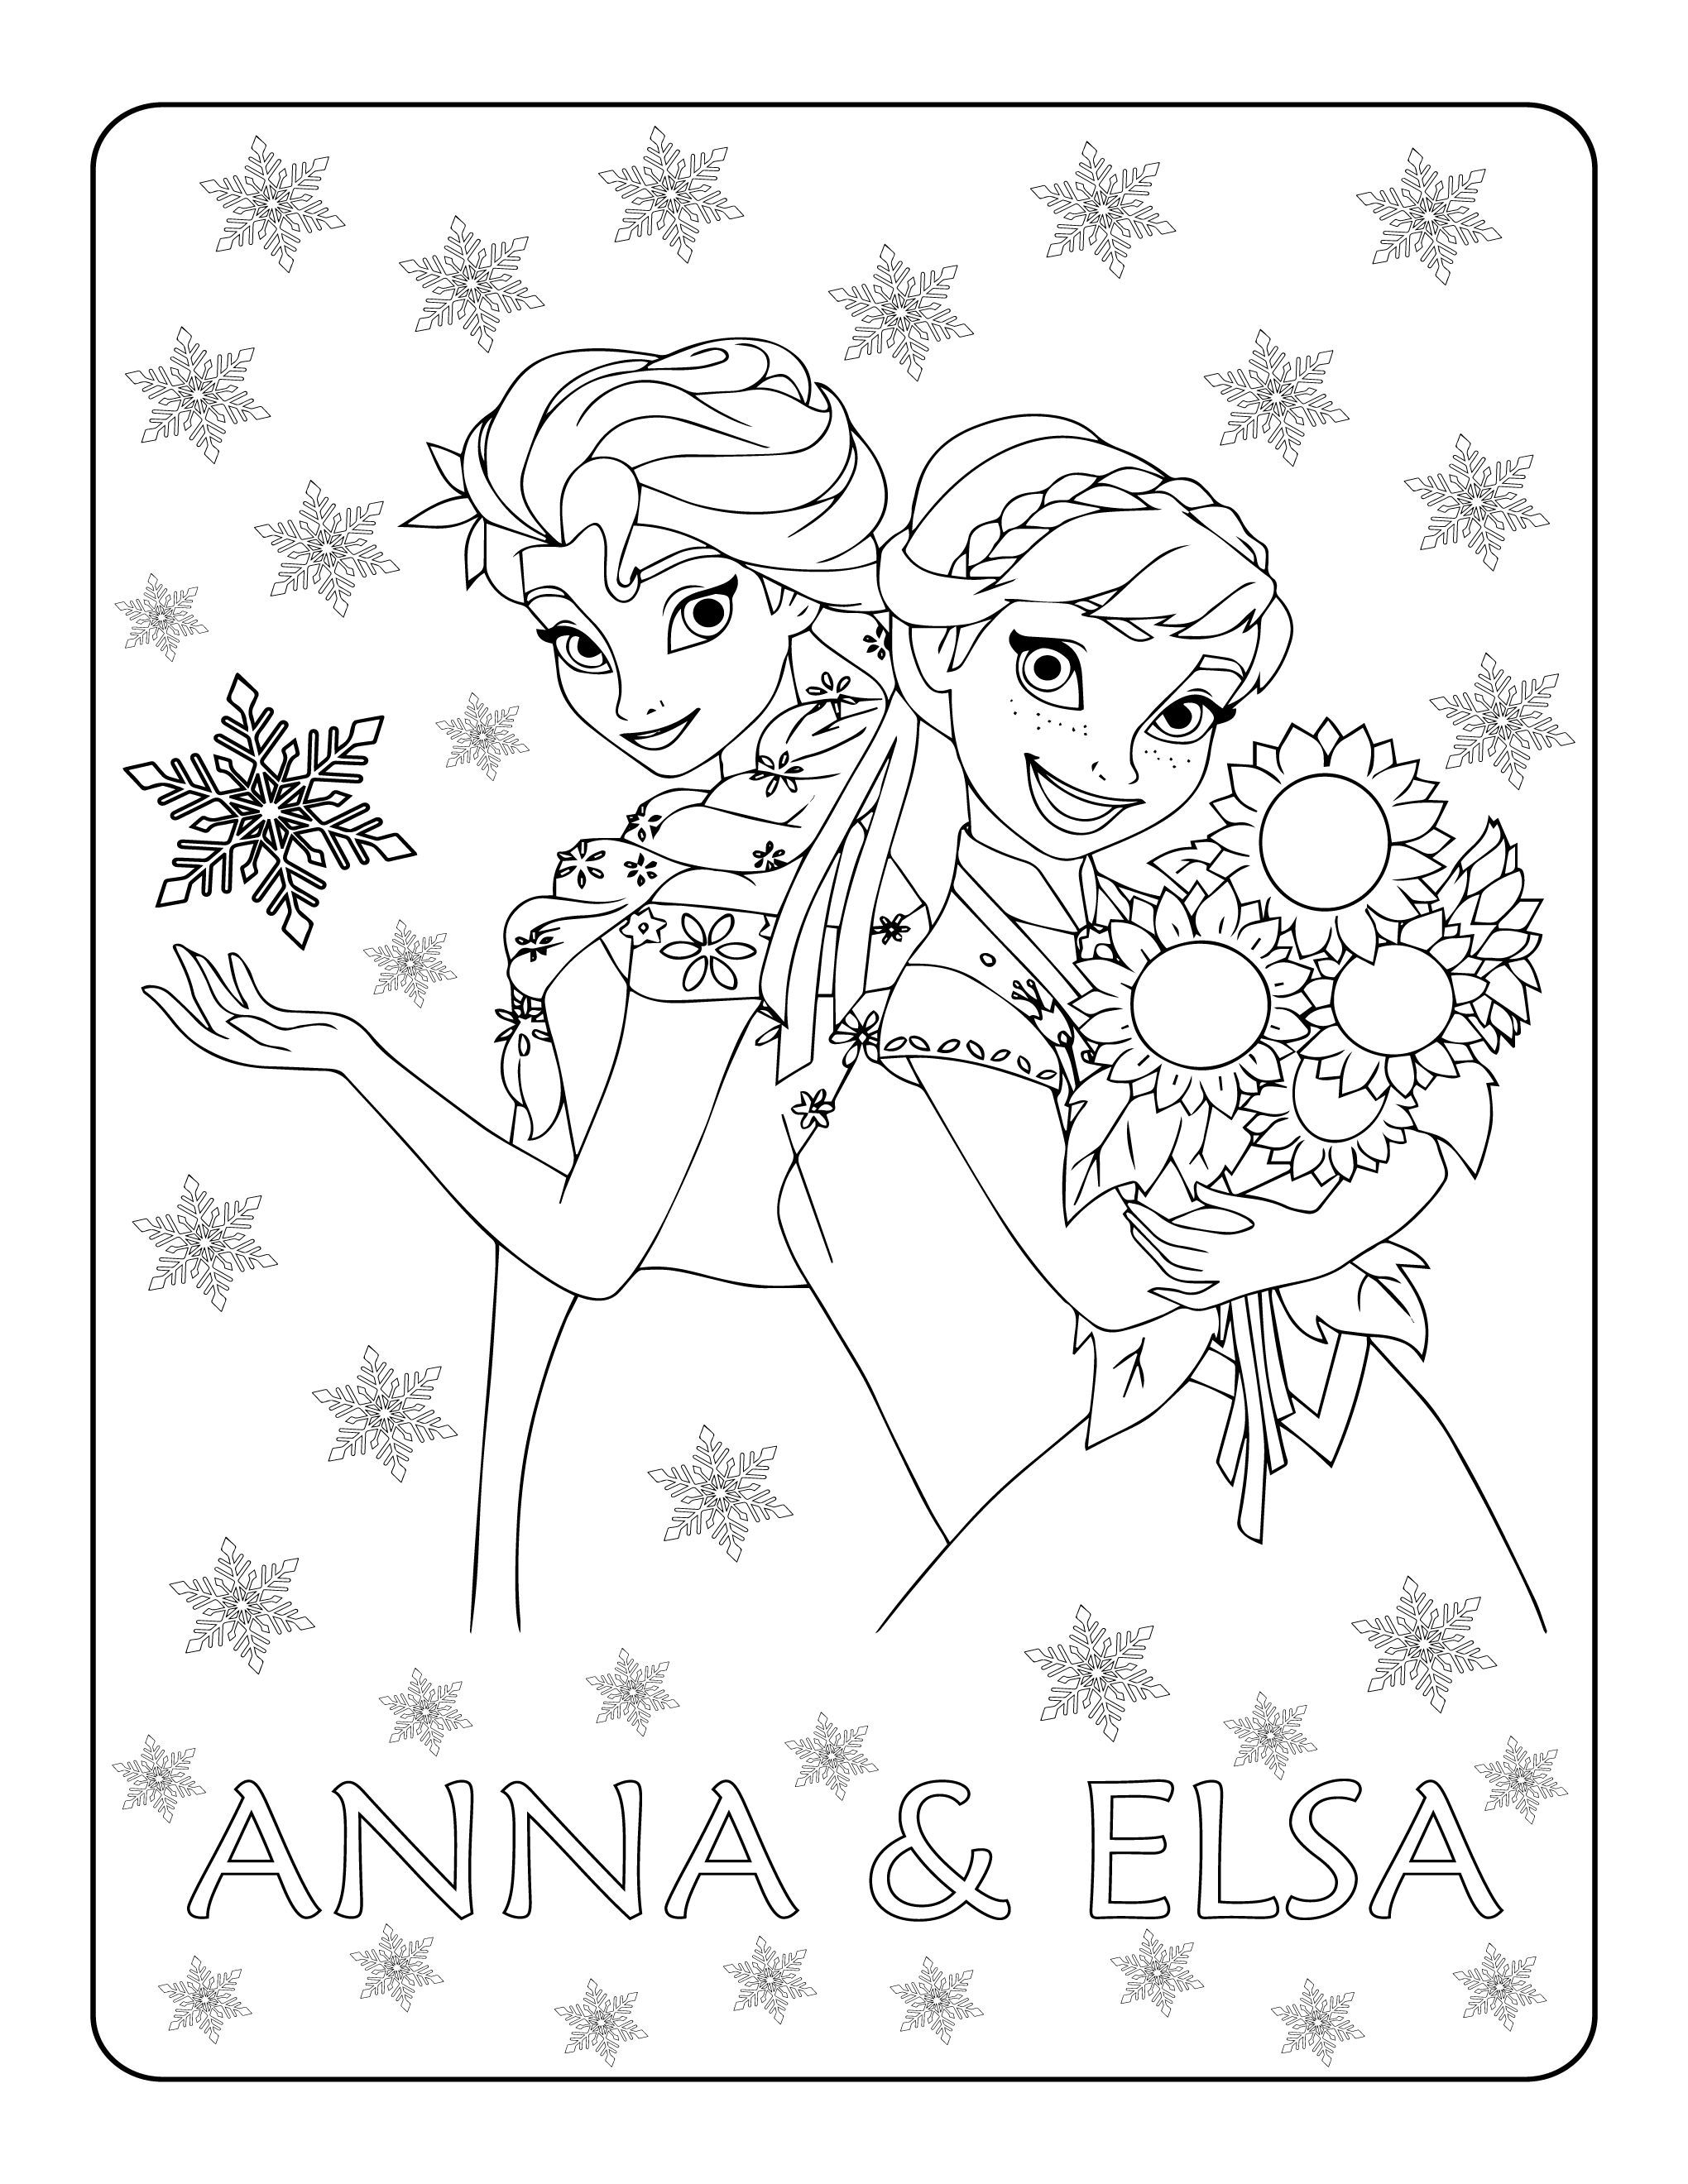 Pritable Frozen 2 Anna & Elsa Coloring Page